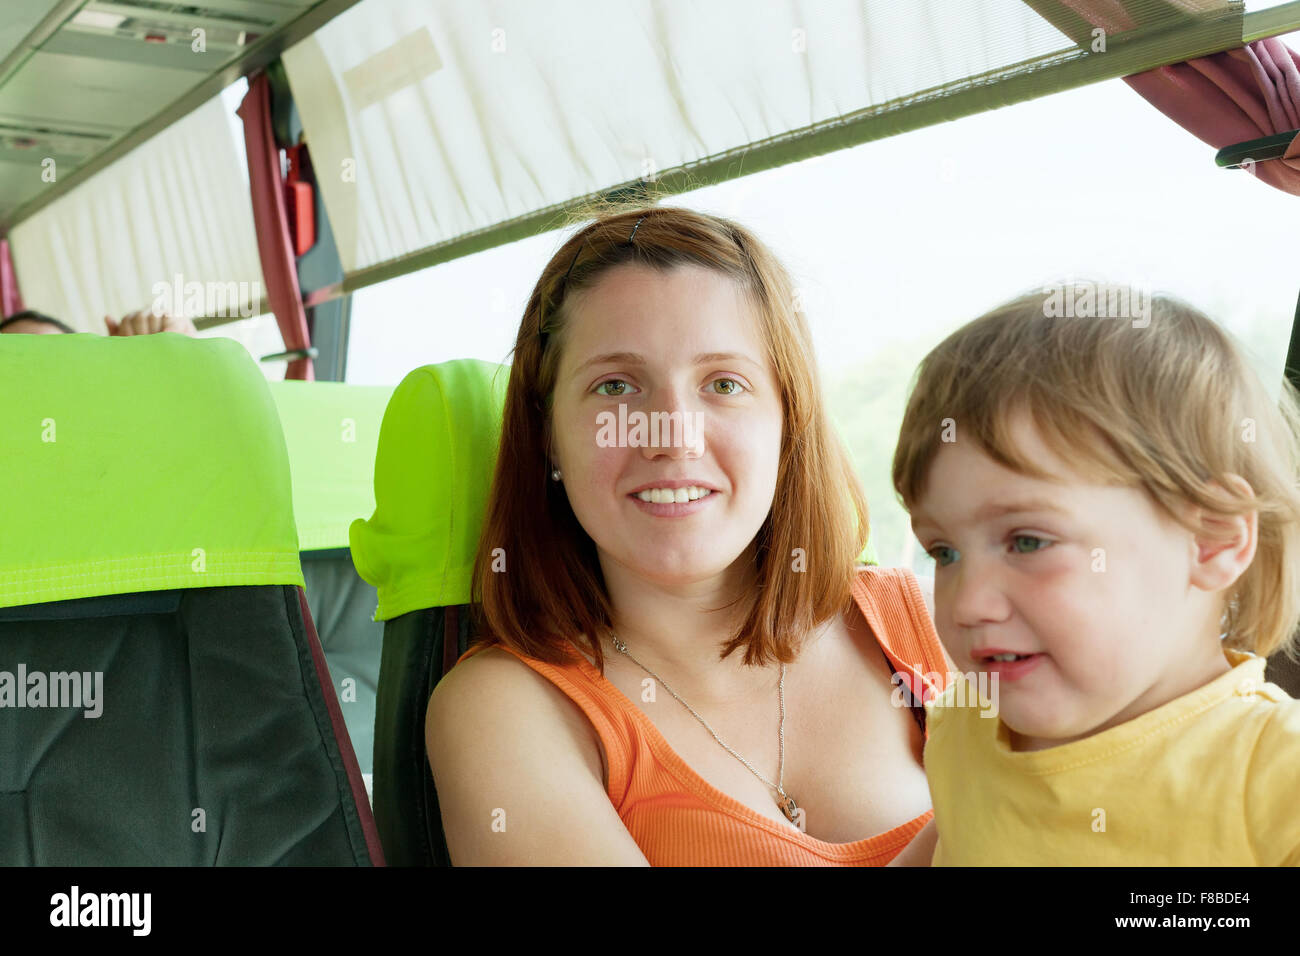 Японская мама автобусе. Мать с ребенком в автобусе. Девушка с ребенком в автобусе. Мама с младенцем в автобусе. Автобус для детей.